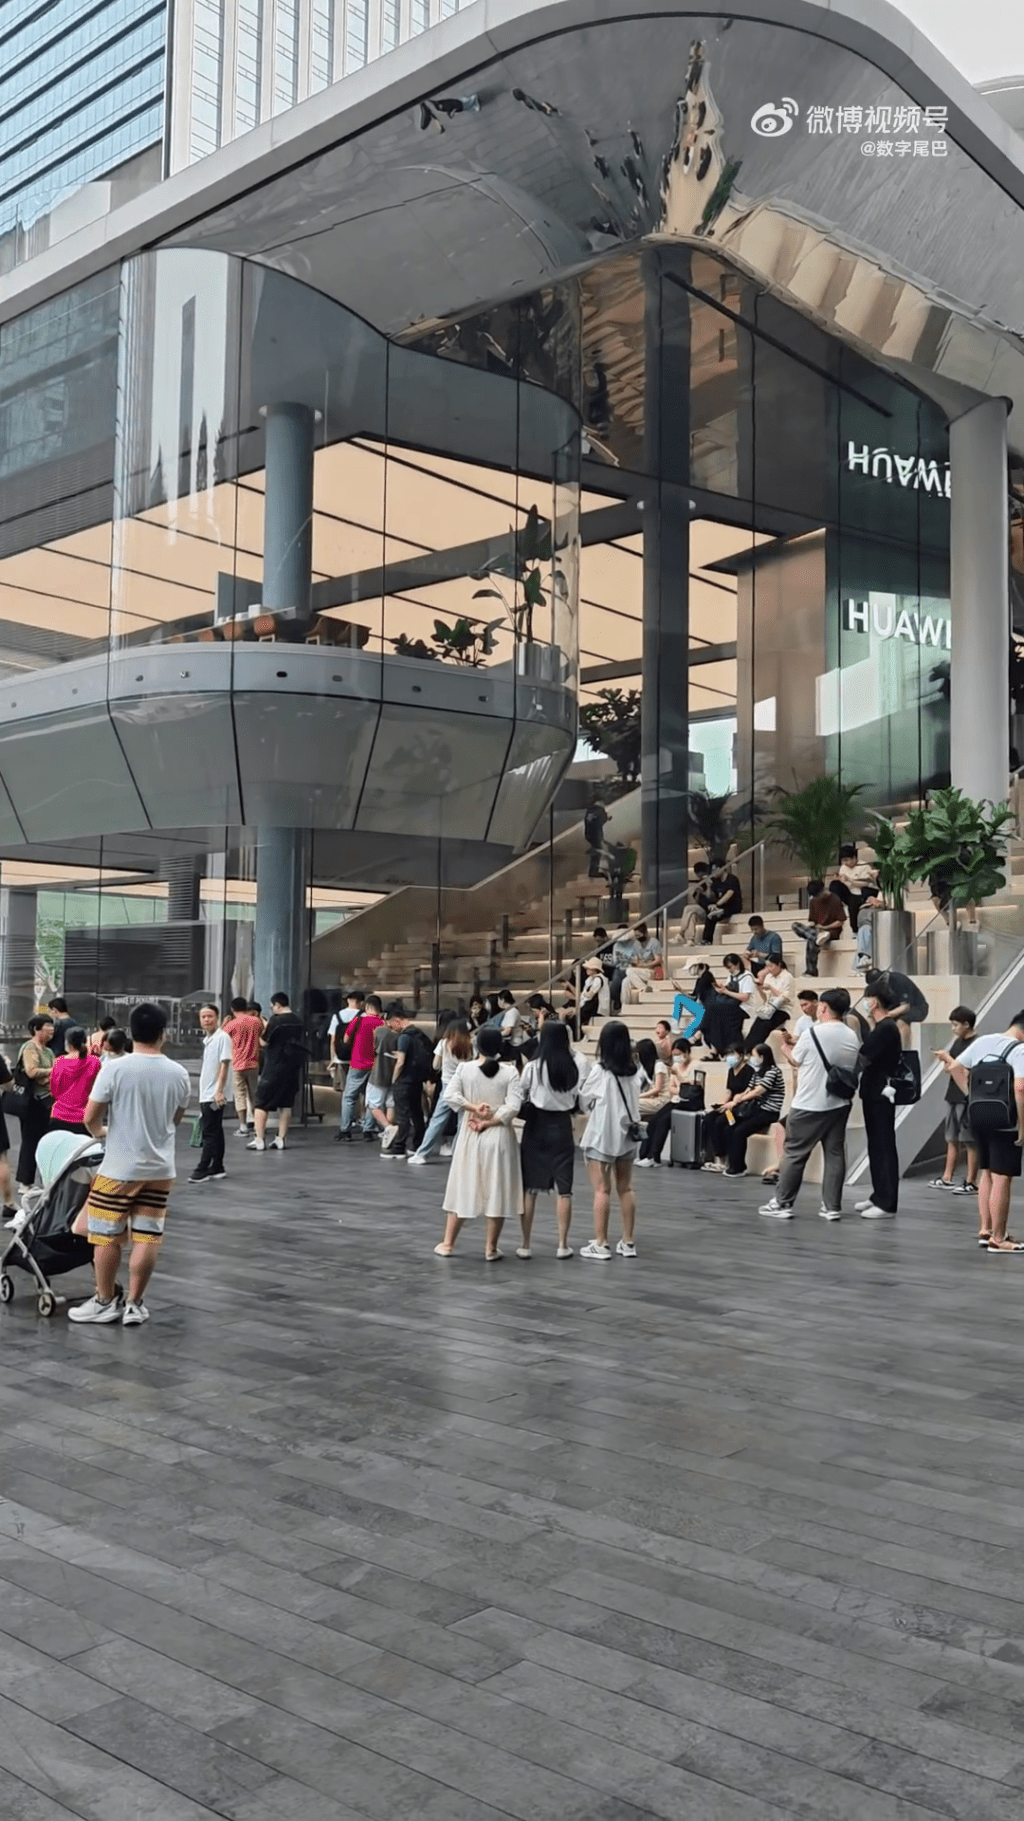 在深圳某商场华为旗舰店门口一早已有粉丝提前排起了长队。